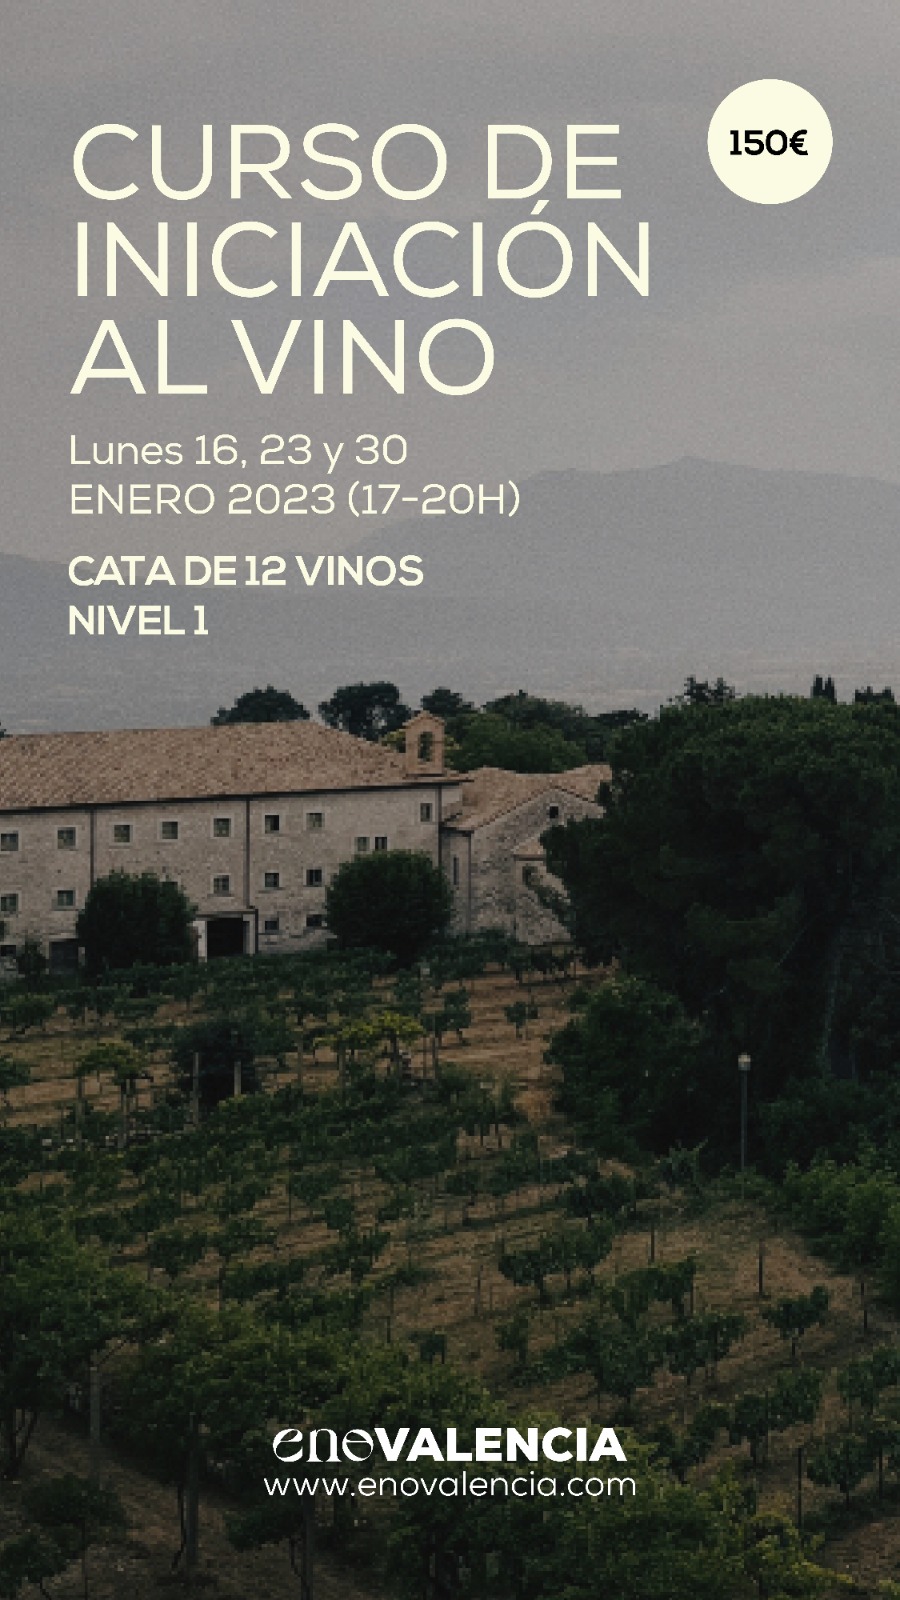 Eventos Curso de iniciación al vino Nivel 1 EnoValencia - Cata, eventos y venta de vino 9